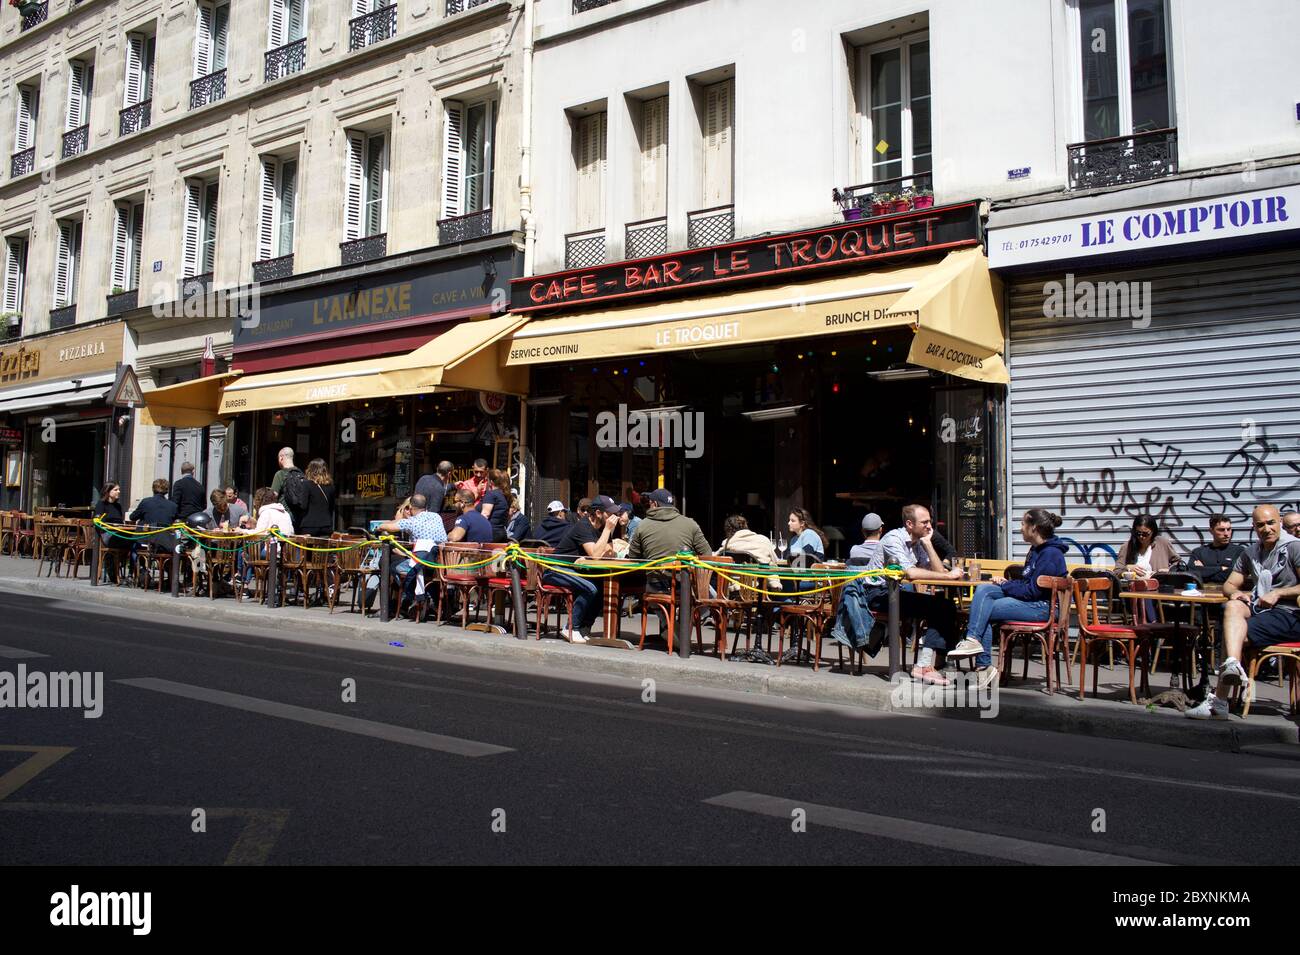 Les Parisiens dégustent un verre le samedi après-midi sur une terrasse ensoleillée, ouverte après des restrictions de verrouillage de la couleur vive 19 - café-bar le Troquet, rue de Clignancourt, 75018 Paris, France Banque D'Images